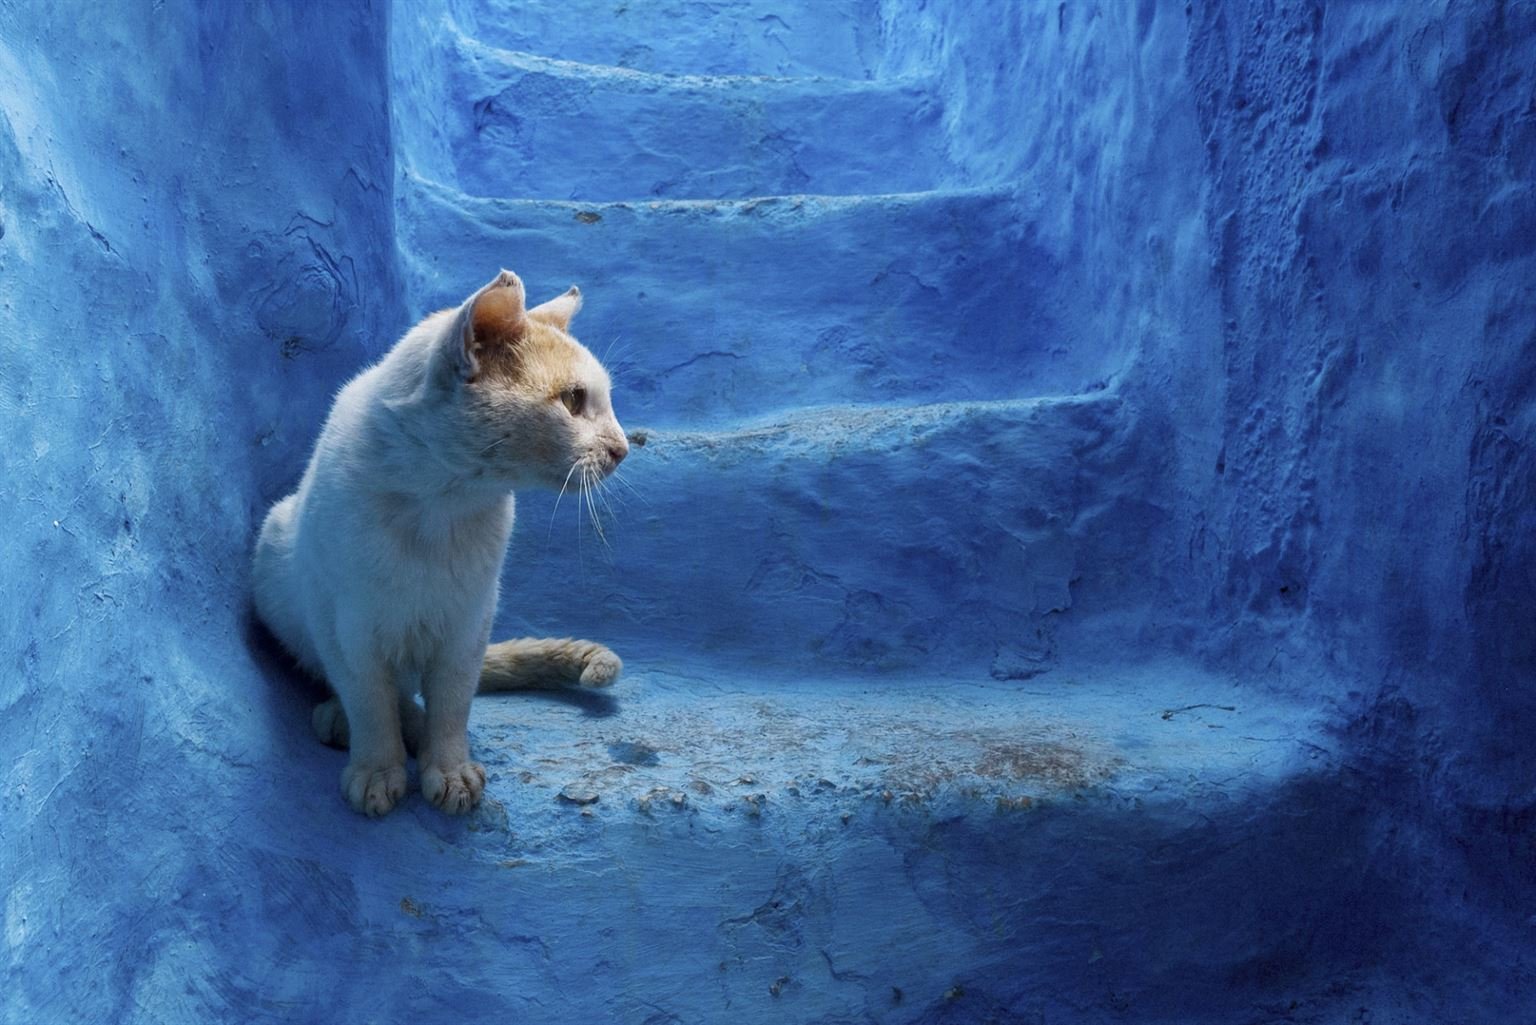 Шефшауэн, город небесных красок — Голубая жемчужина Марокко